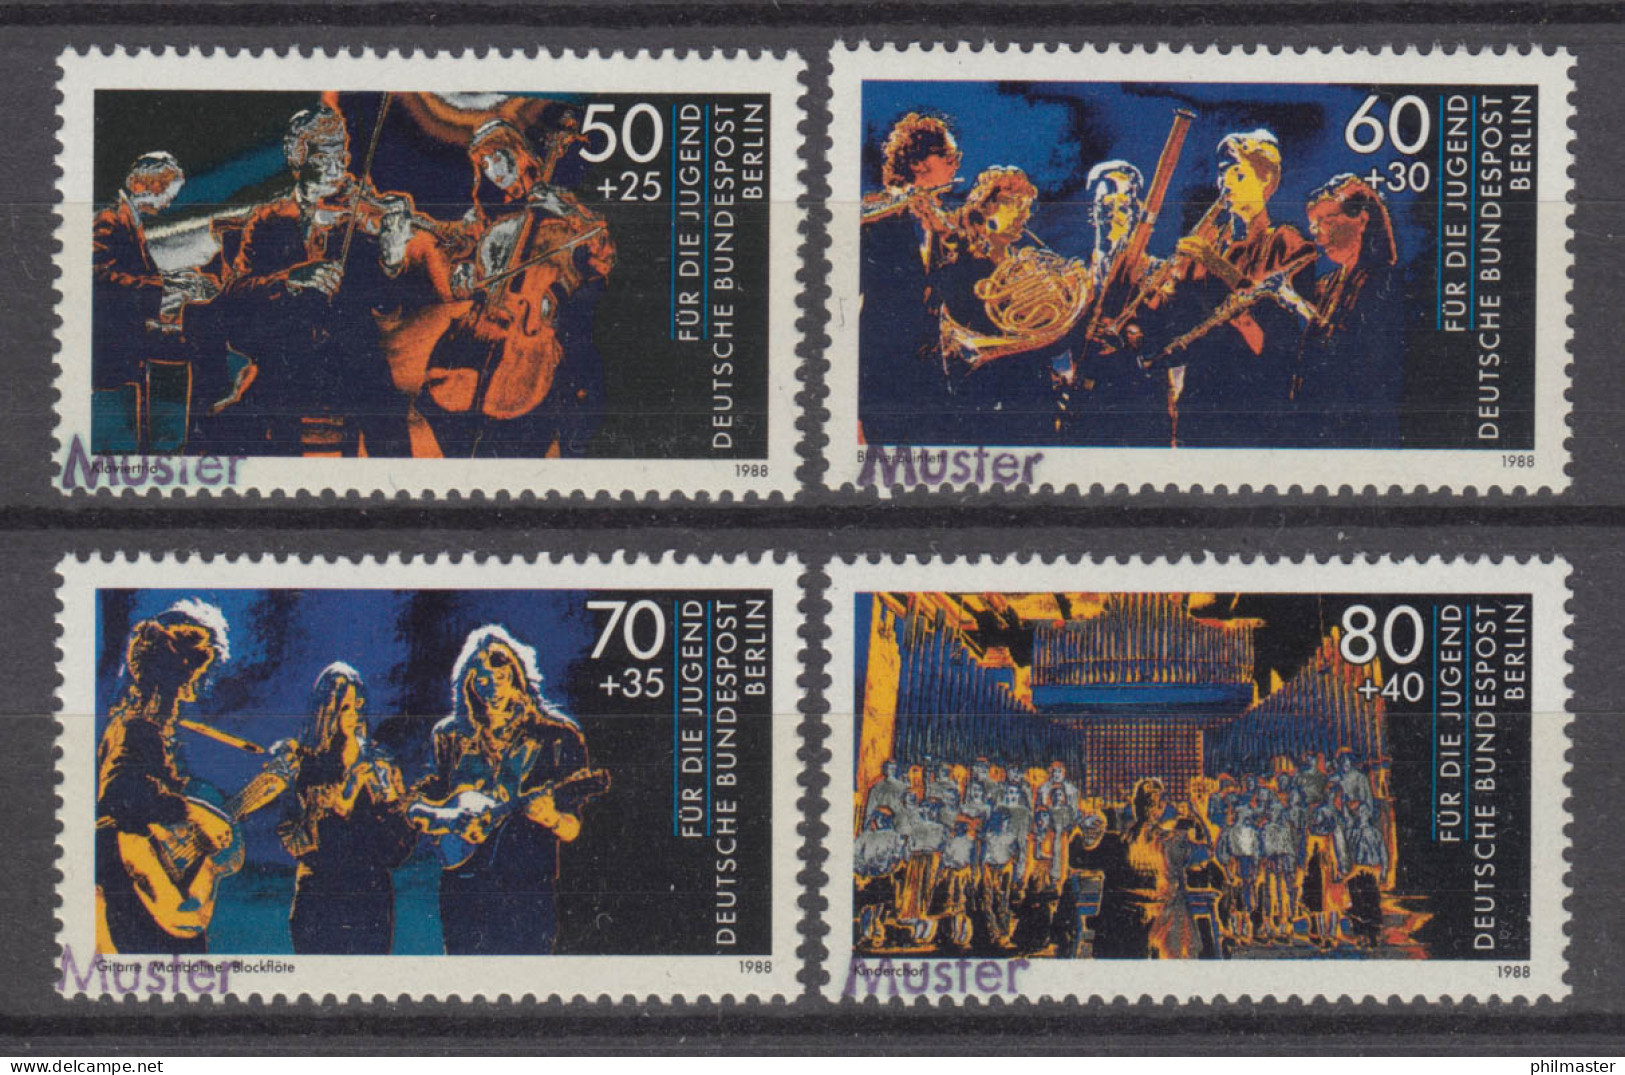 807-810 Jugend Musiziert: Musikinstrumente Kinderchor, Satz Mit MUSTER-Aufdruck - Unused Stamps